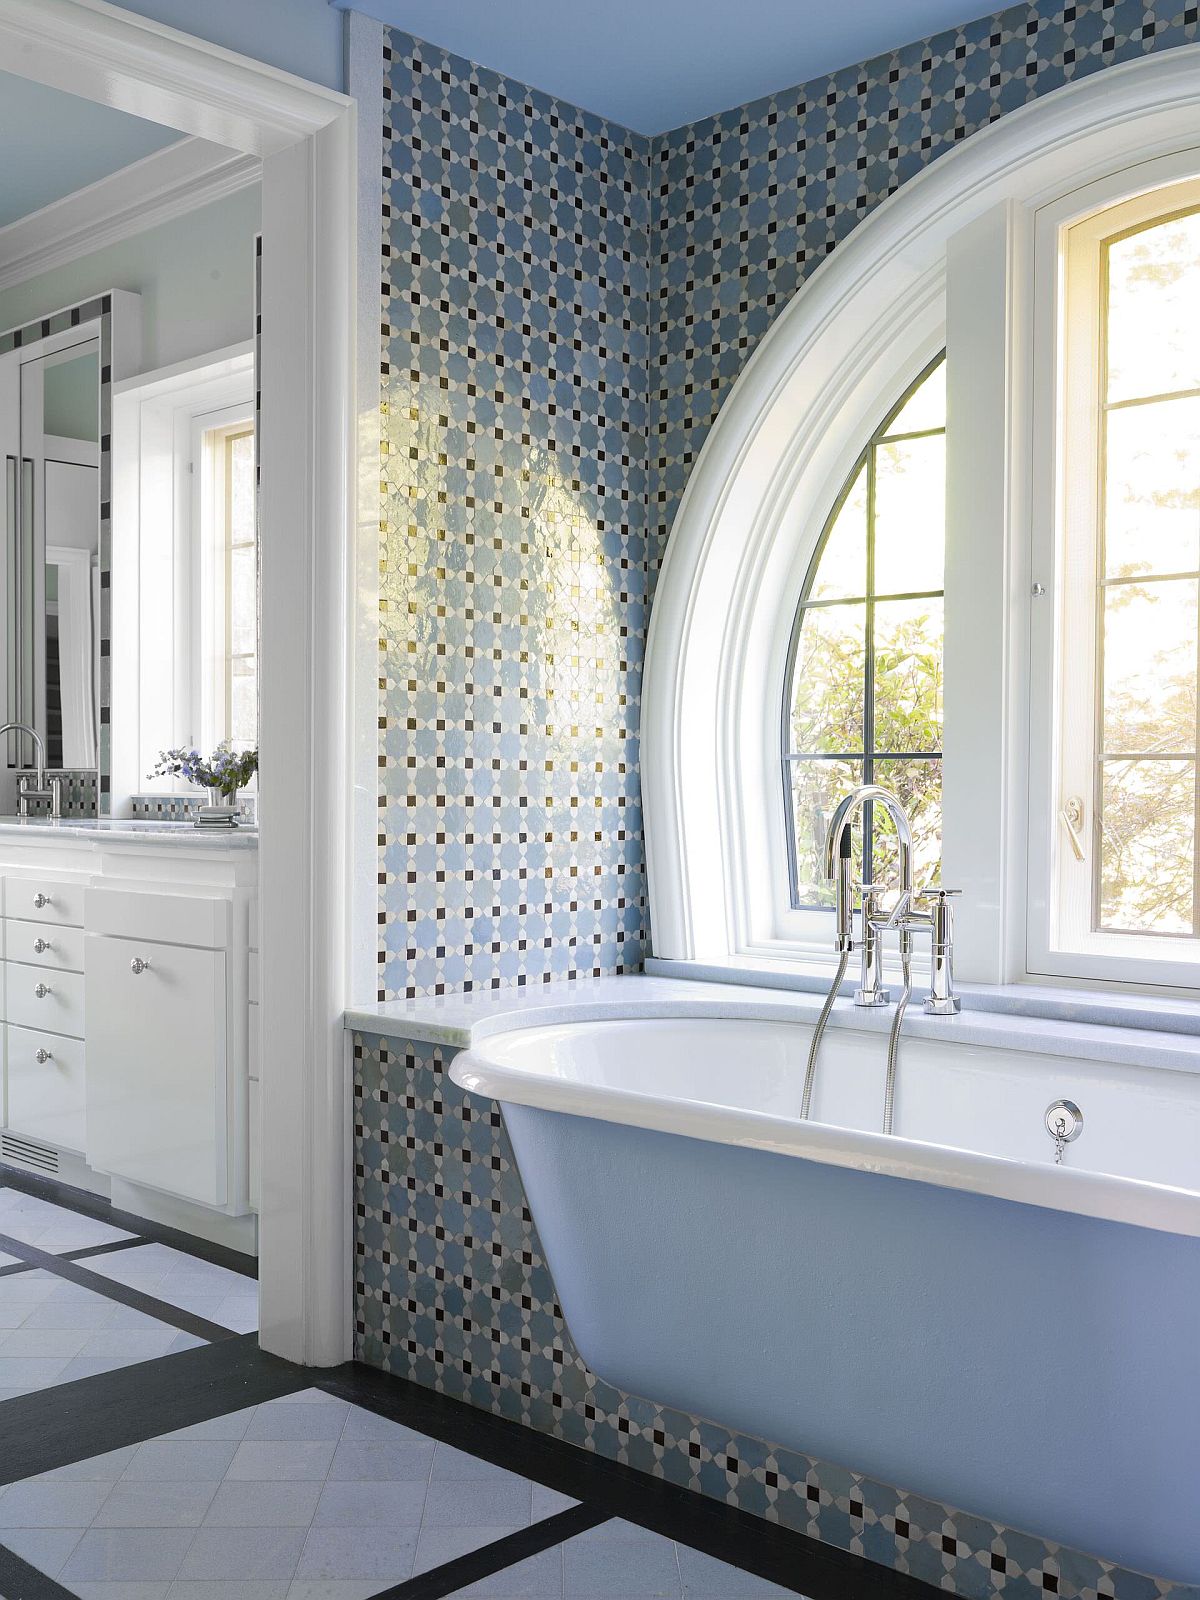 Bồn tắm màu xanh lam nhạt cho phòng tắm thời Victoria hiện đại